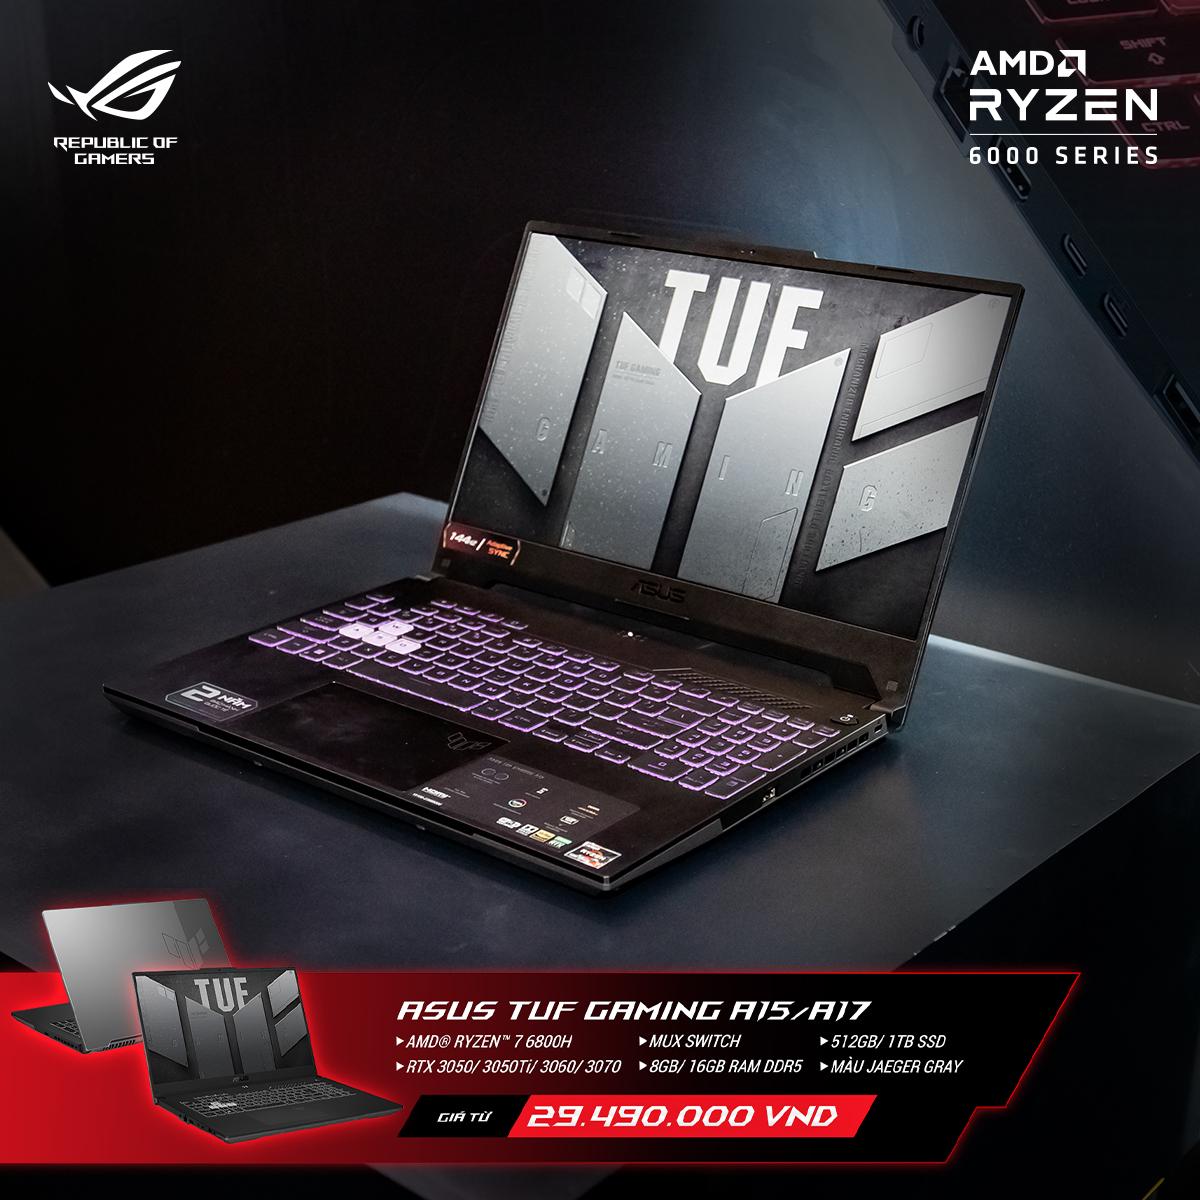 ASUS ROG tung loạt laptop ROG và TUF cấu hình khủng, sử dụng AMD Ryzen 6000 Series cho game thủ, giới sáng tạo - 8gwZQtjB rSrYtEI6M90W1AM6XOrNSqu2TORg4 IRBJinBZgHQ7wVy3sabnqZVBykA11GsW 57Qj